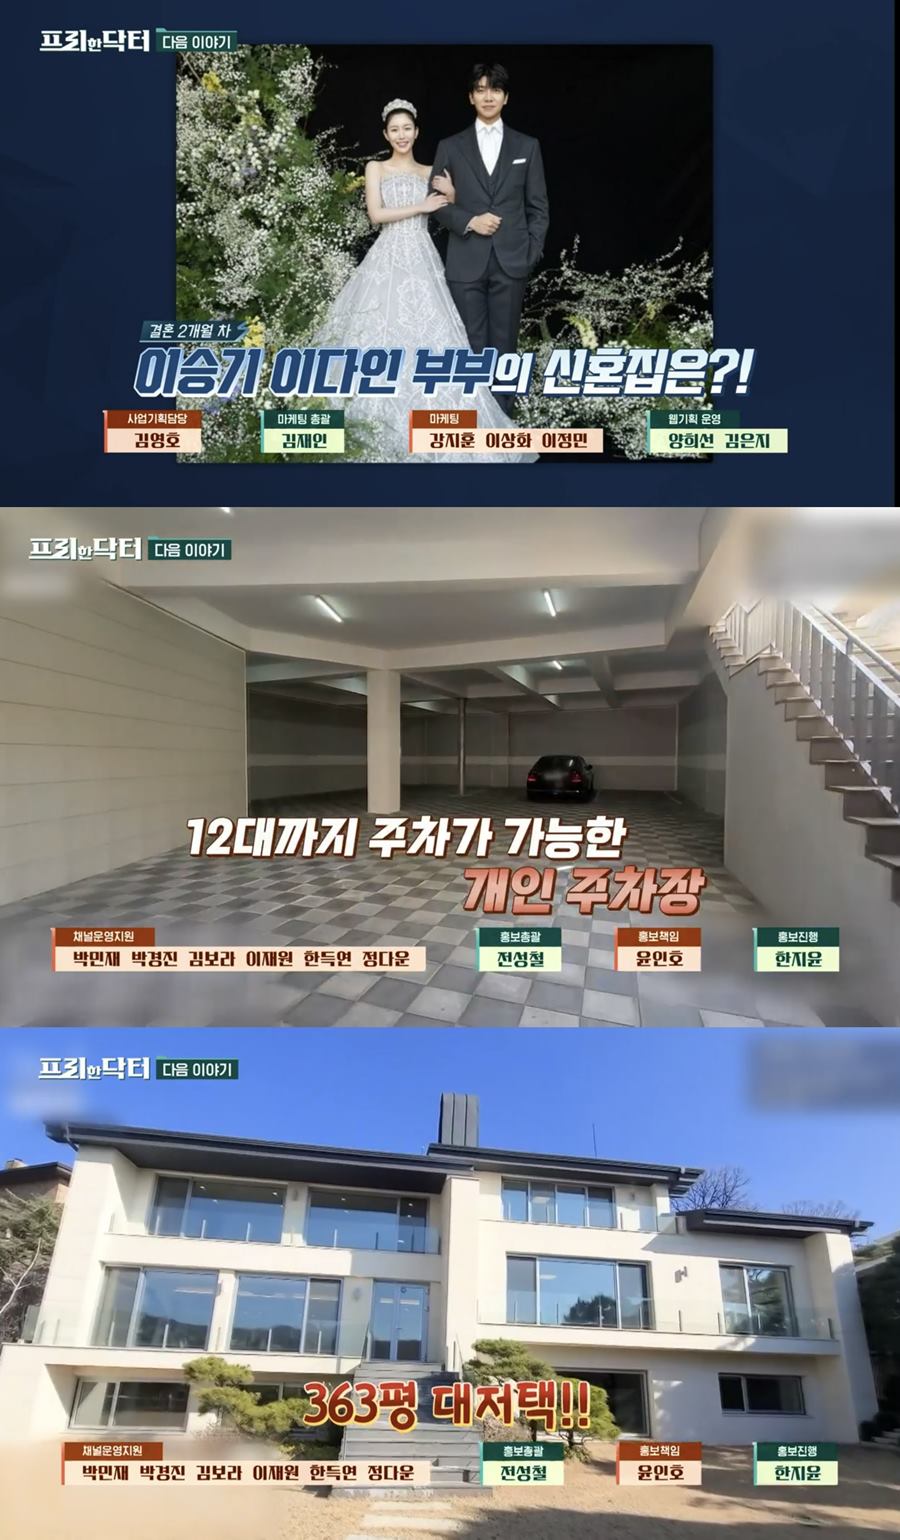 ▲ tvN 예능 프로그램 '프리한 닥터'. 출처| '프리한 닥터' 방송화면 캡처